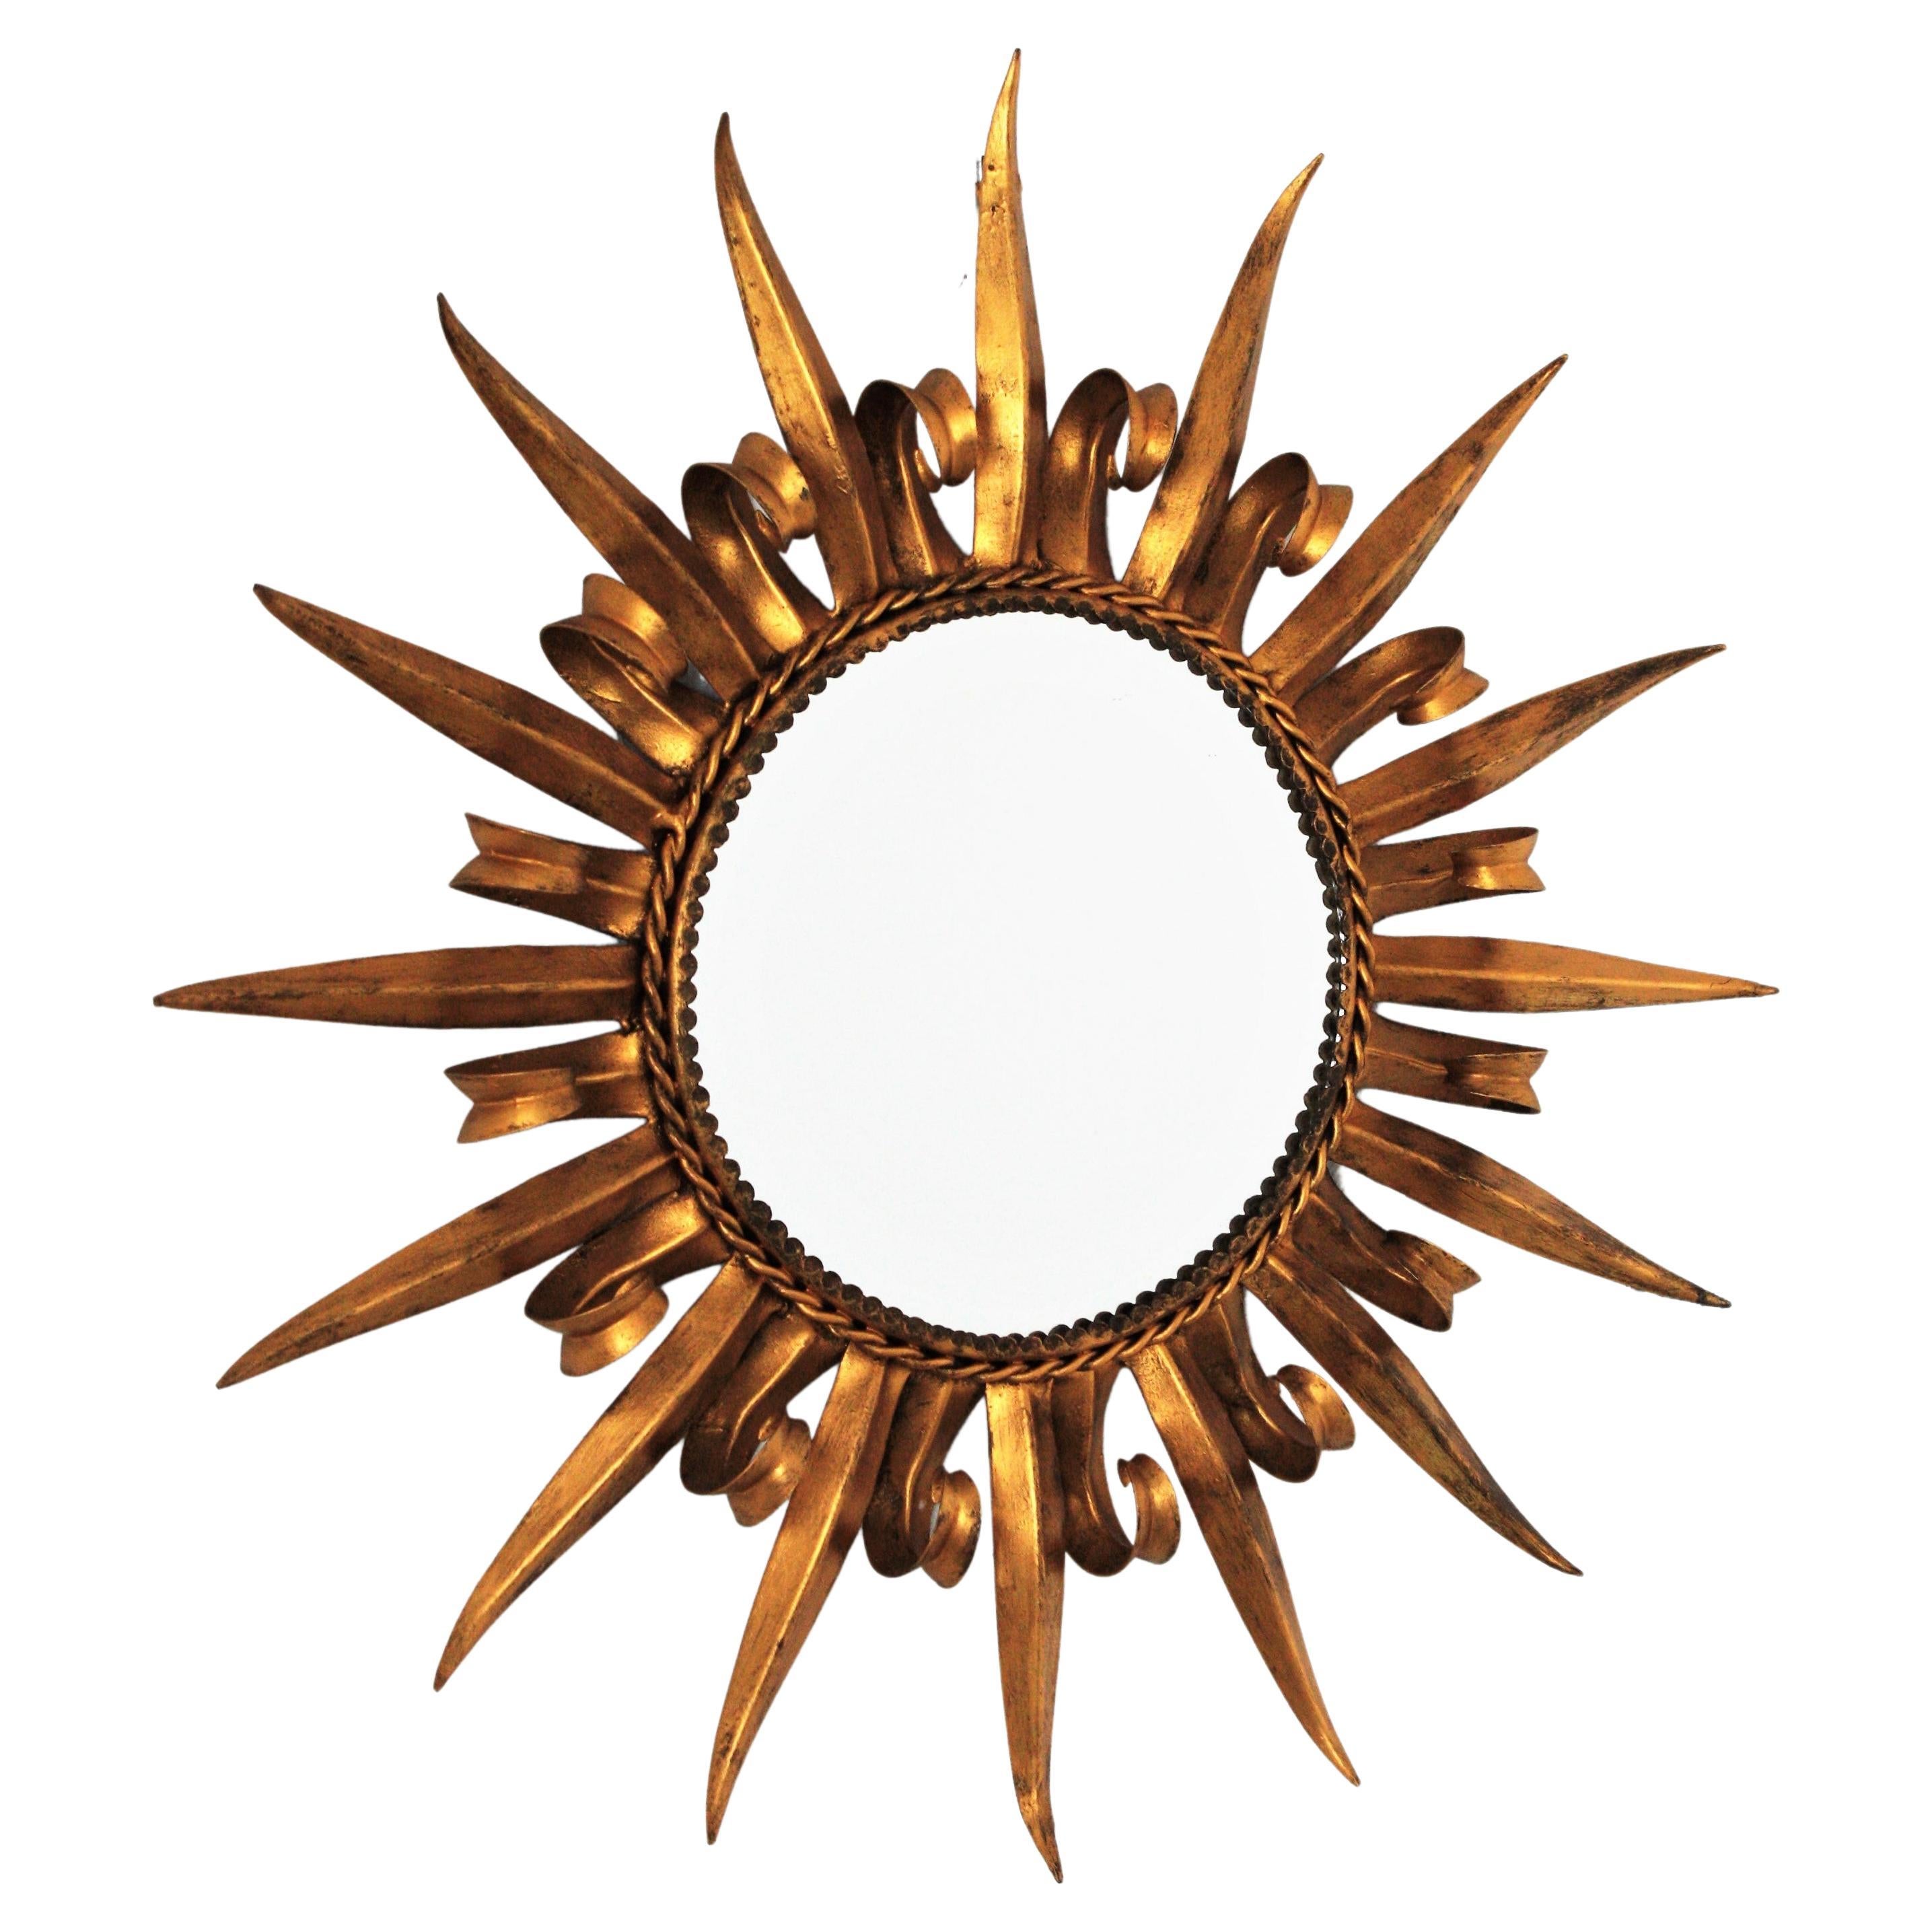 Vergoldetes Metall Französisch Sunburst Spiegel Wimpern Design, 1950er Jahre
Schöner 1950er handgehämmerter doppelschichtiger Wimpernspiegel aus vergoldetem Eisen mit Sonnenschliff.
Der Rahmen besteht aus abwechselnd gebogenen Balken in Wimpernform